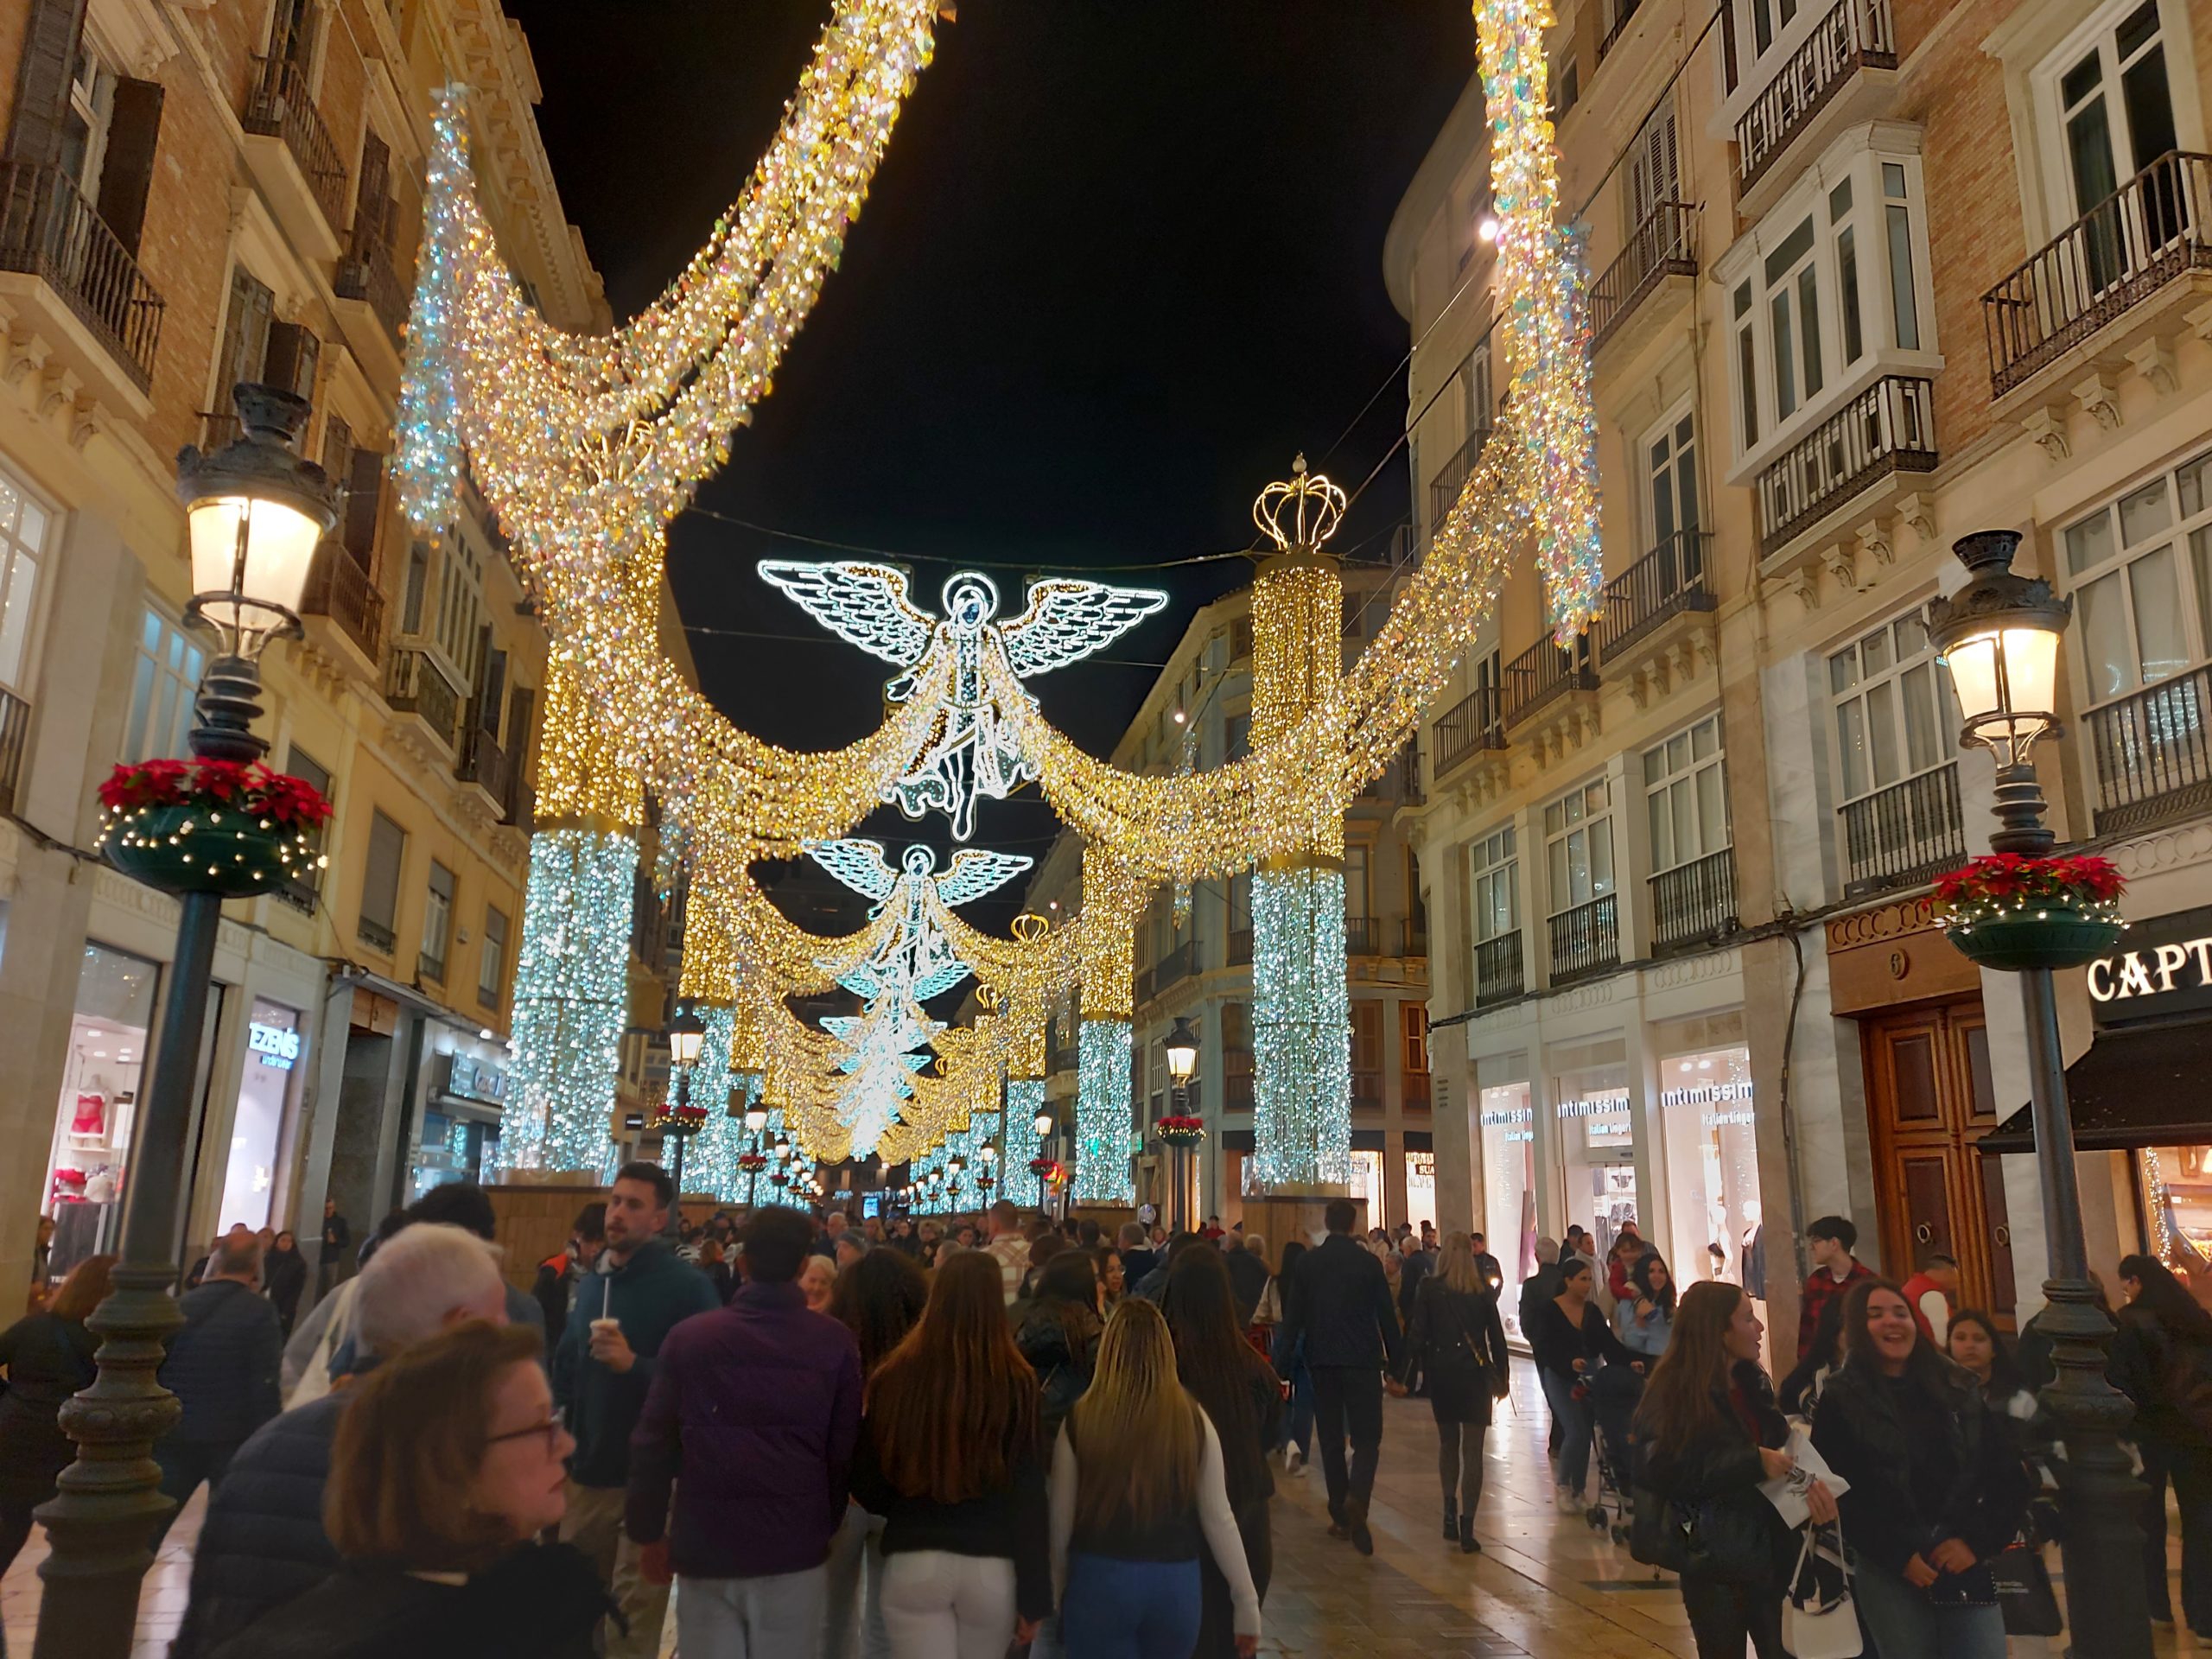 Malaga, Spain Christmas decorations / Kimberly Sullivan